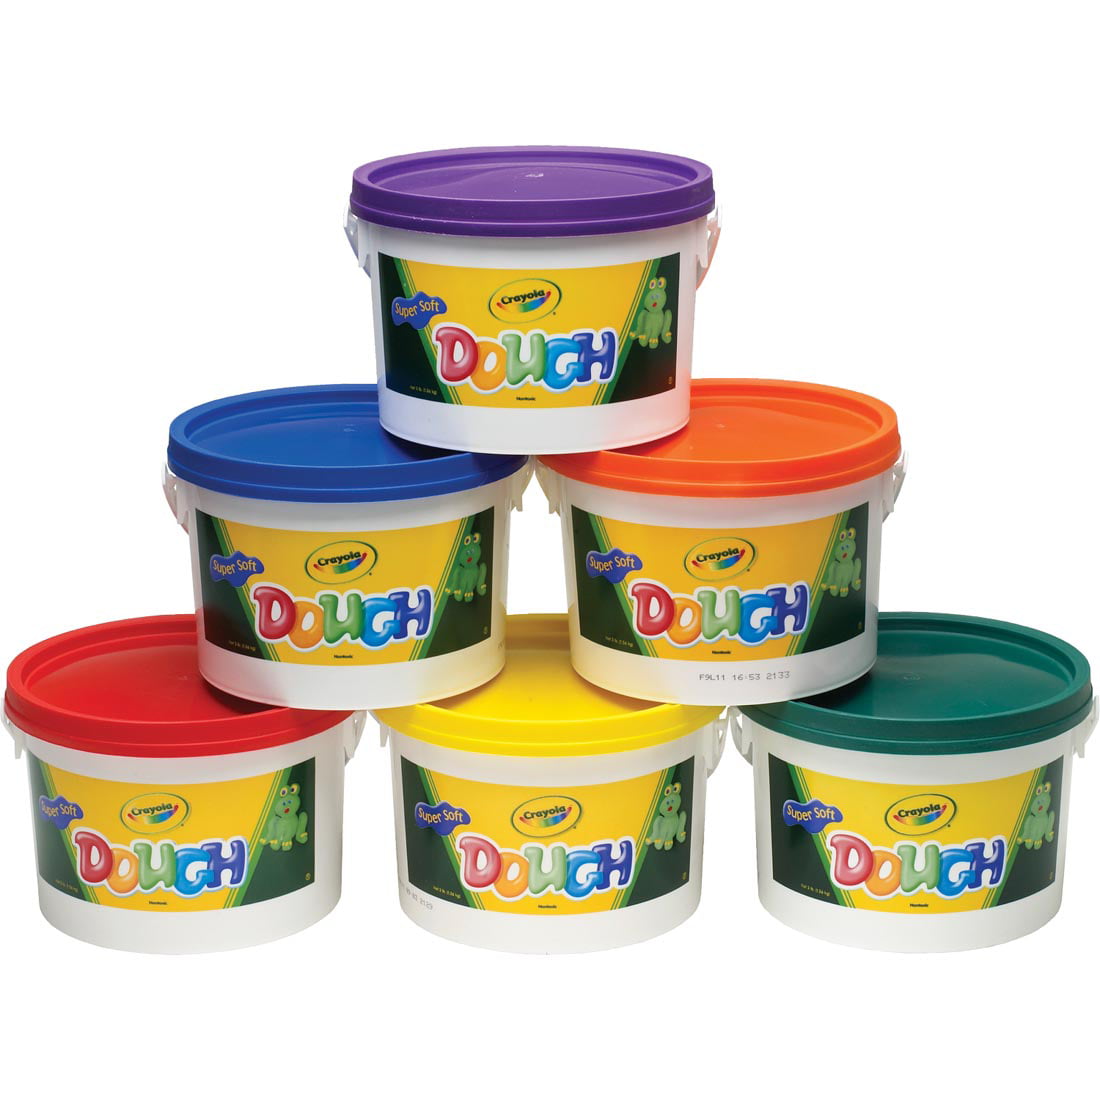 Crayola Modeling Dough Pet Salon 20 Piece Play-Doh 